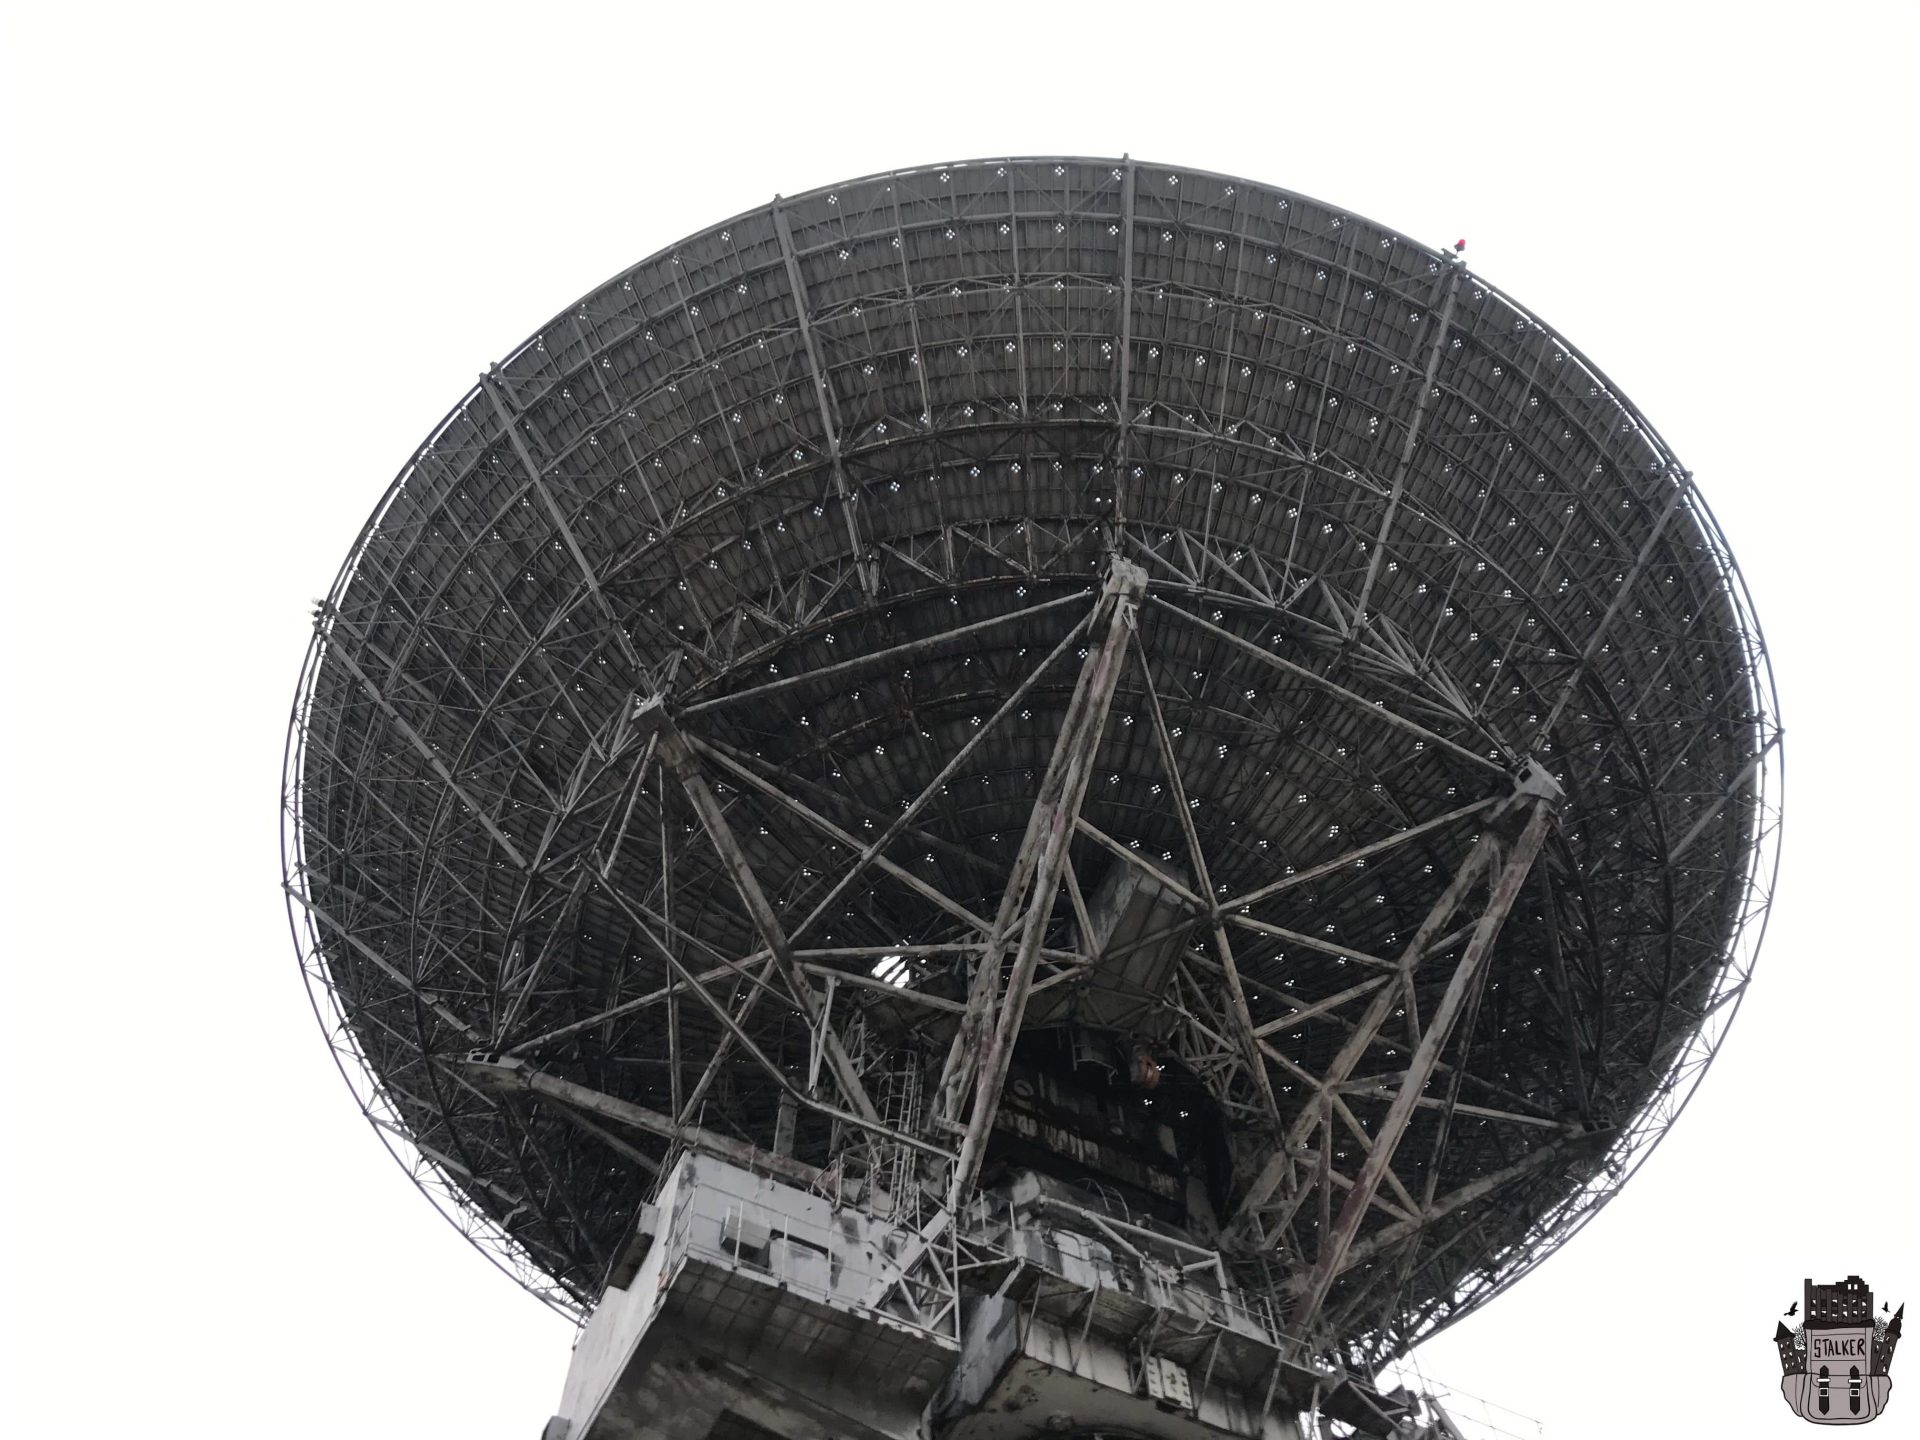 Abandoned TNA-400 Soviet radio telescope